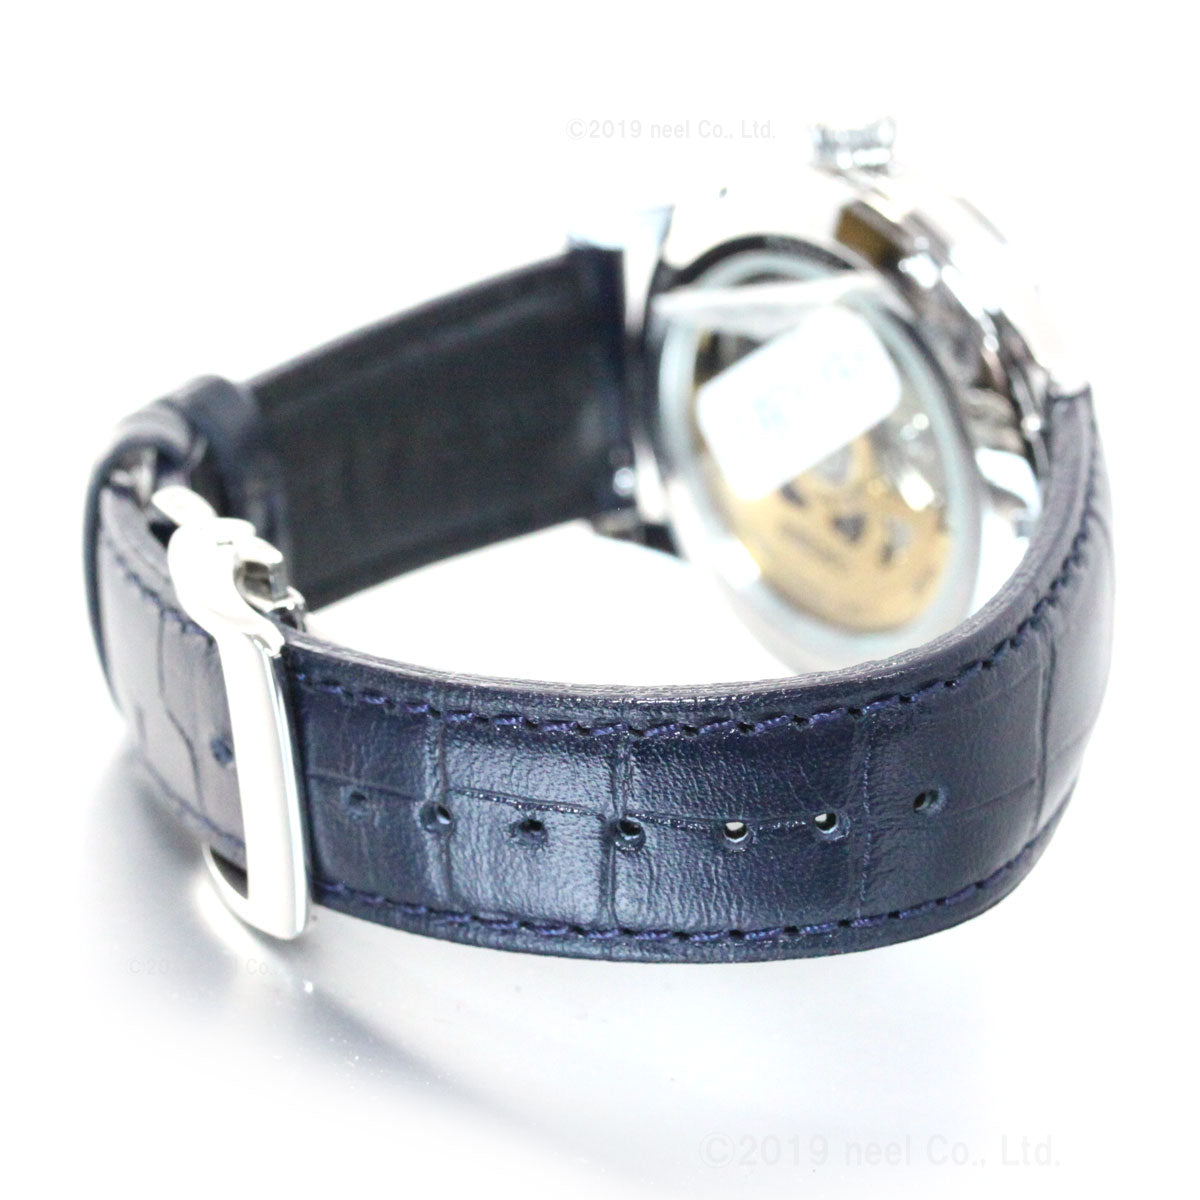 セイコー プレザージュ 自動巻き メカニカル 腕時計 メンズ SARY155